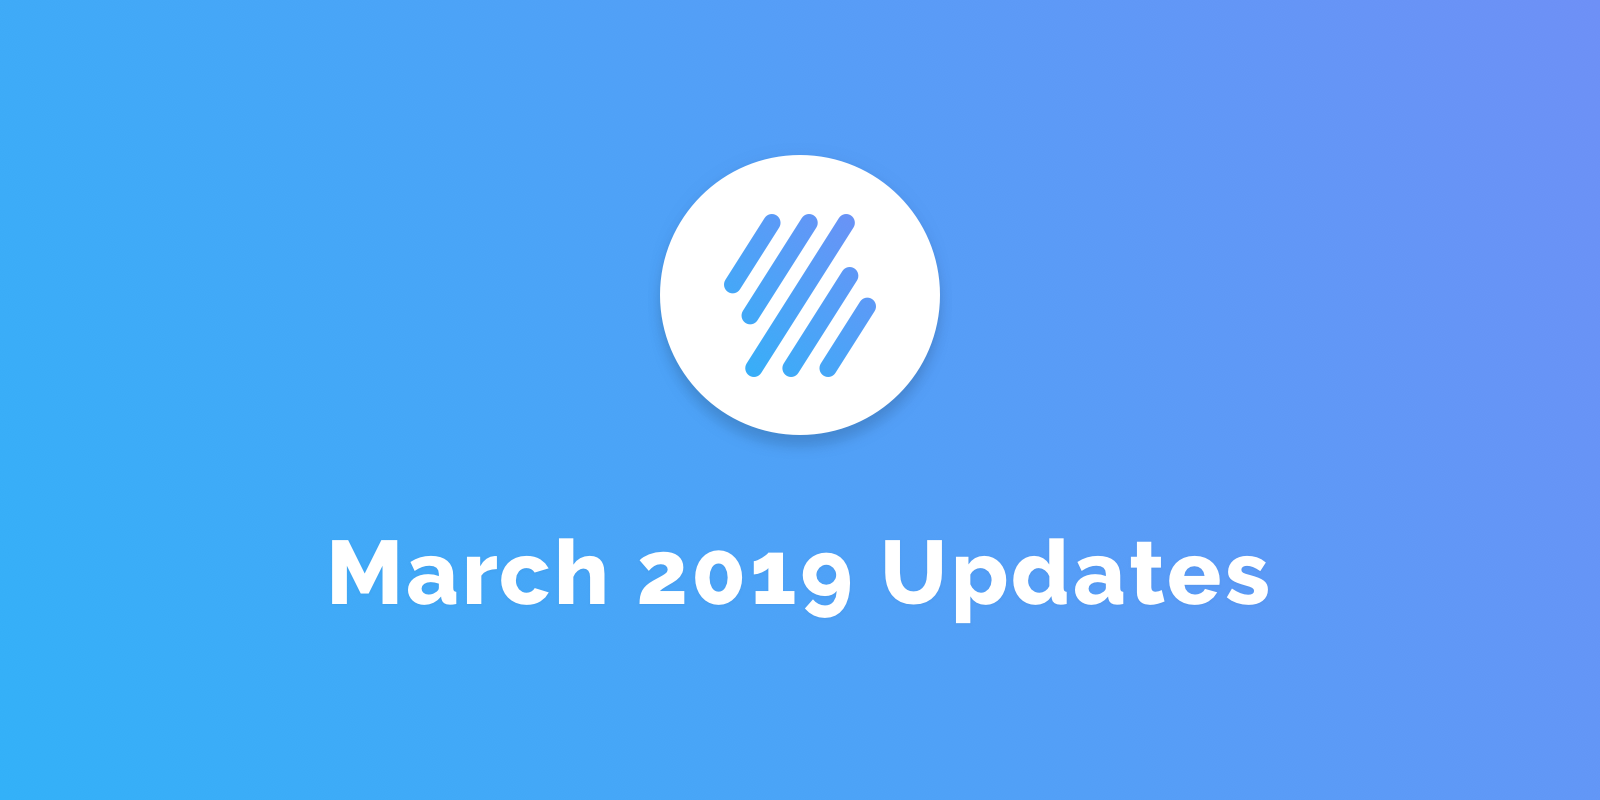 March 2019 Updates